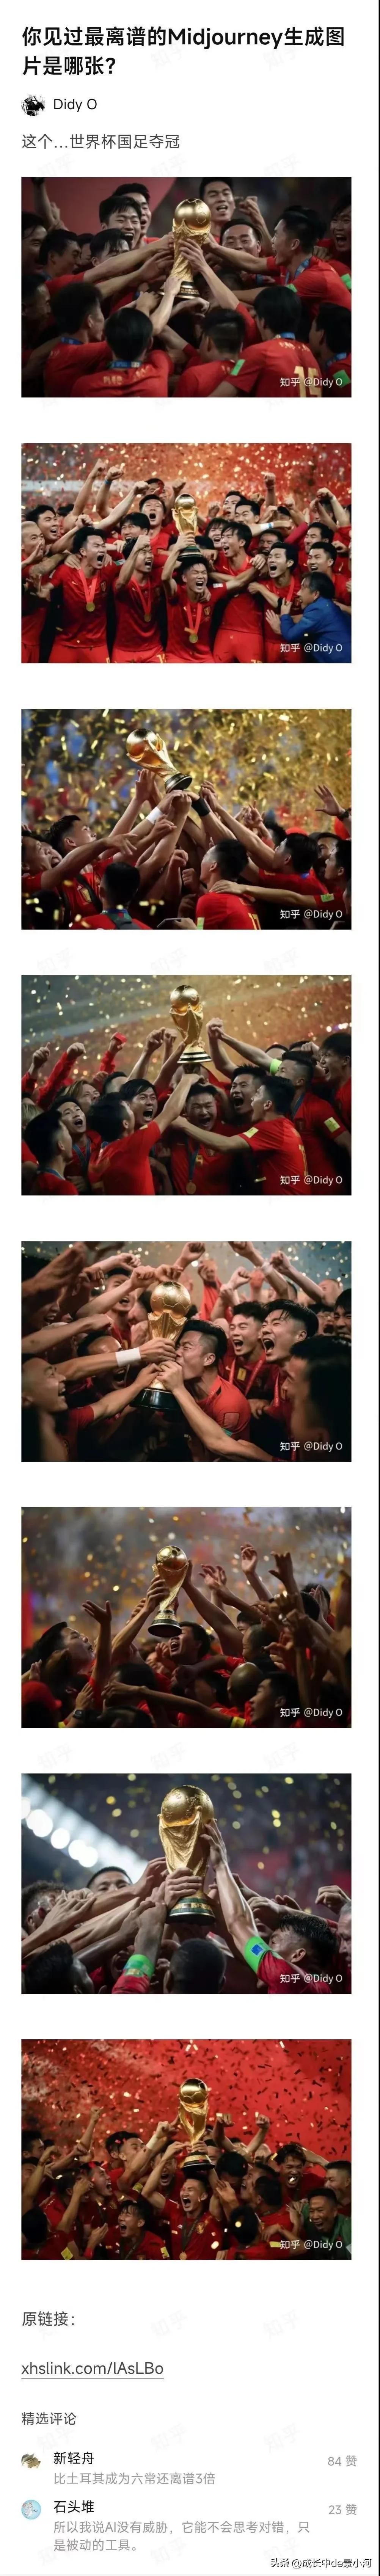 让AI生成中国男足夺得世界杯冠军的照片会是什么样子？
现在是幻想时间，这生成的照